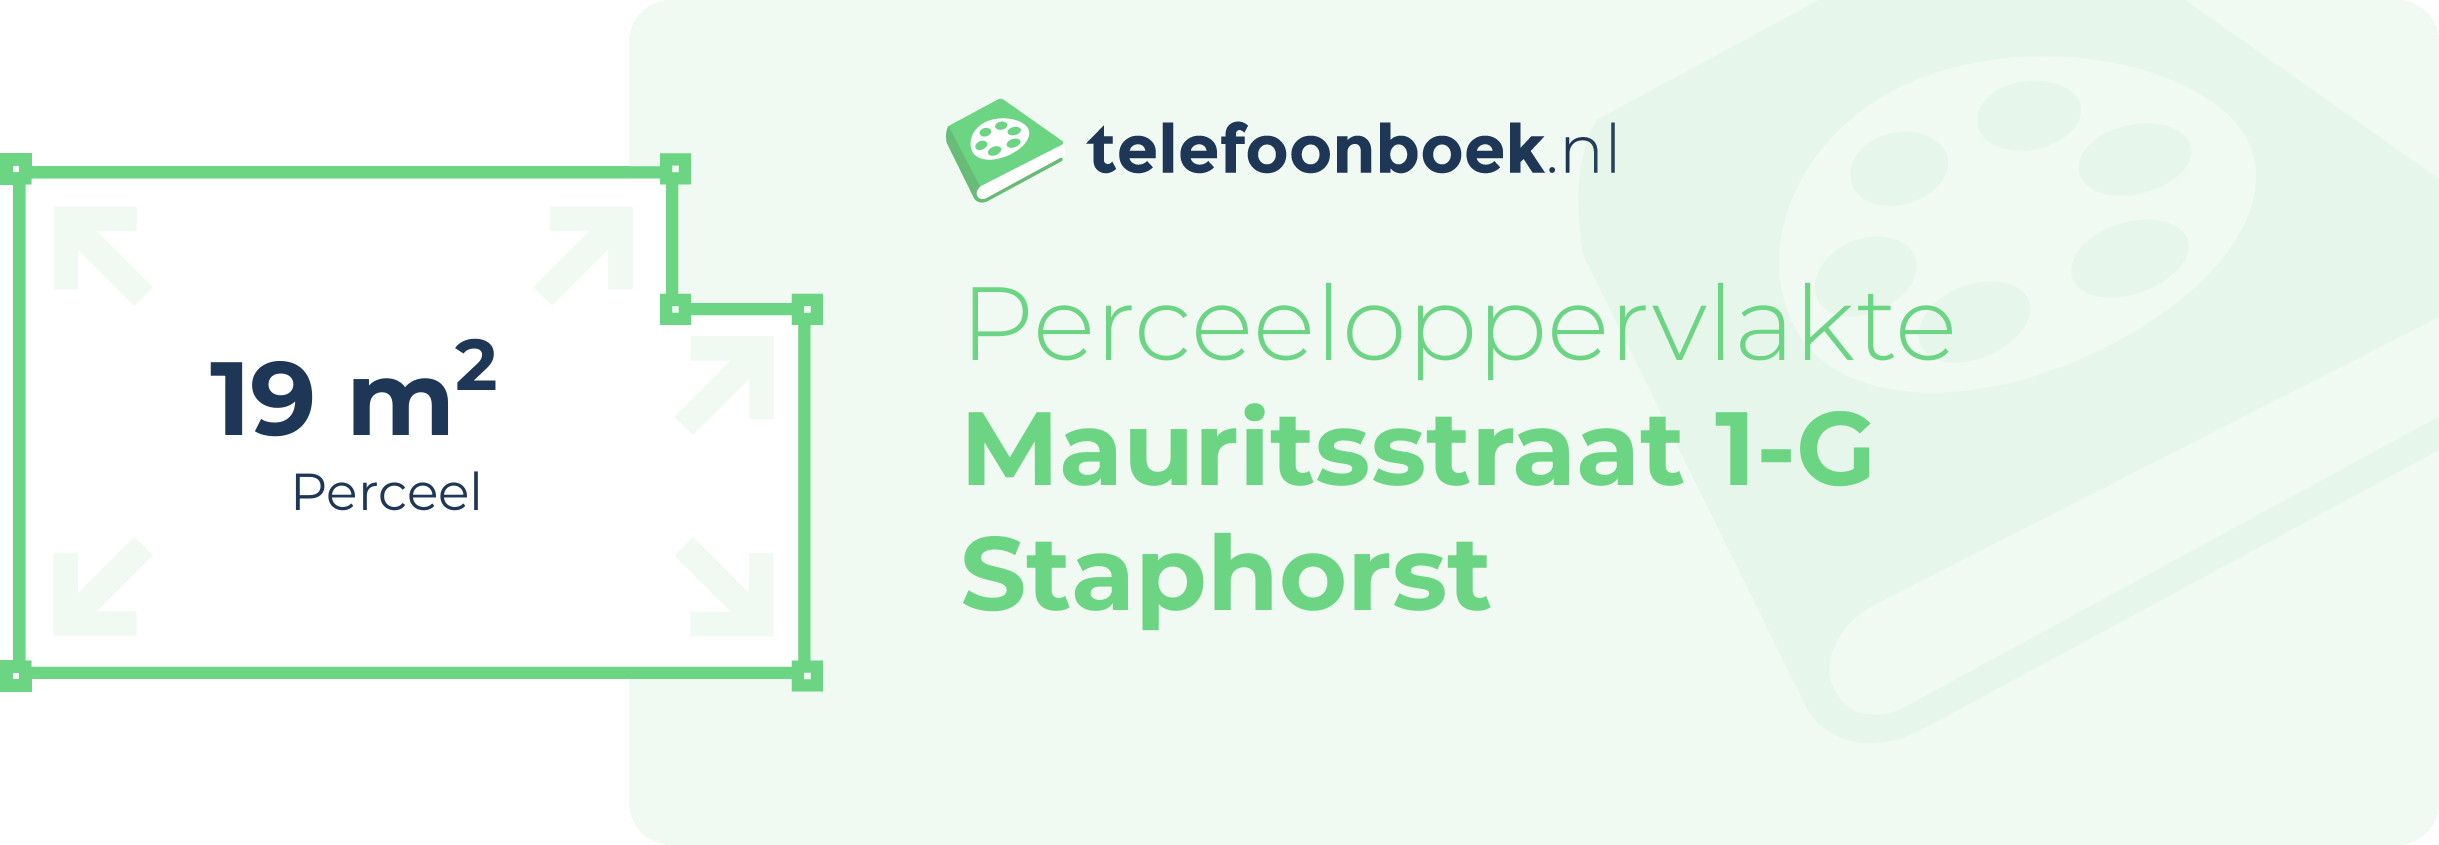 Perceeloppervlakte Mauritsstraat 1-G Staphorst